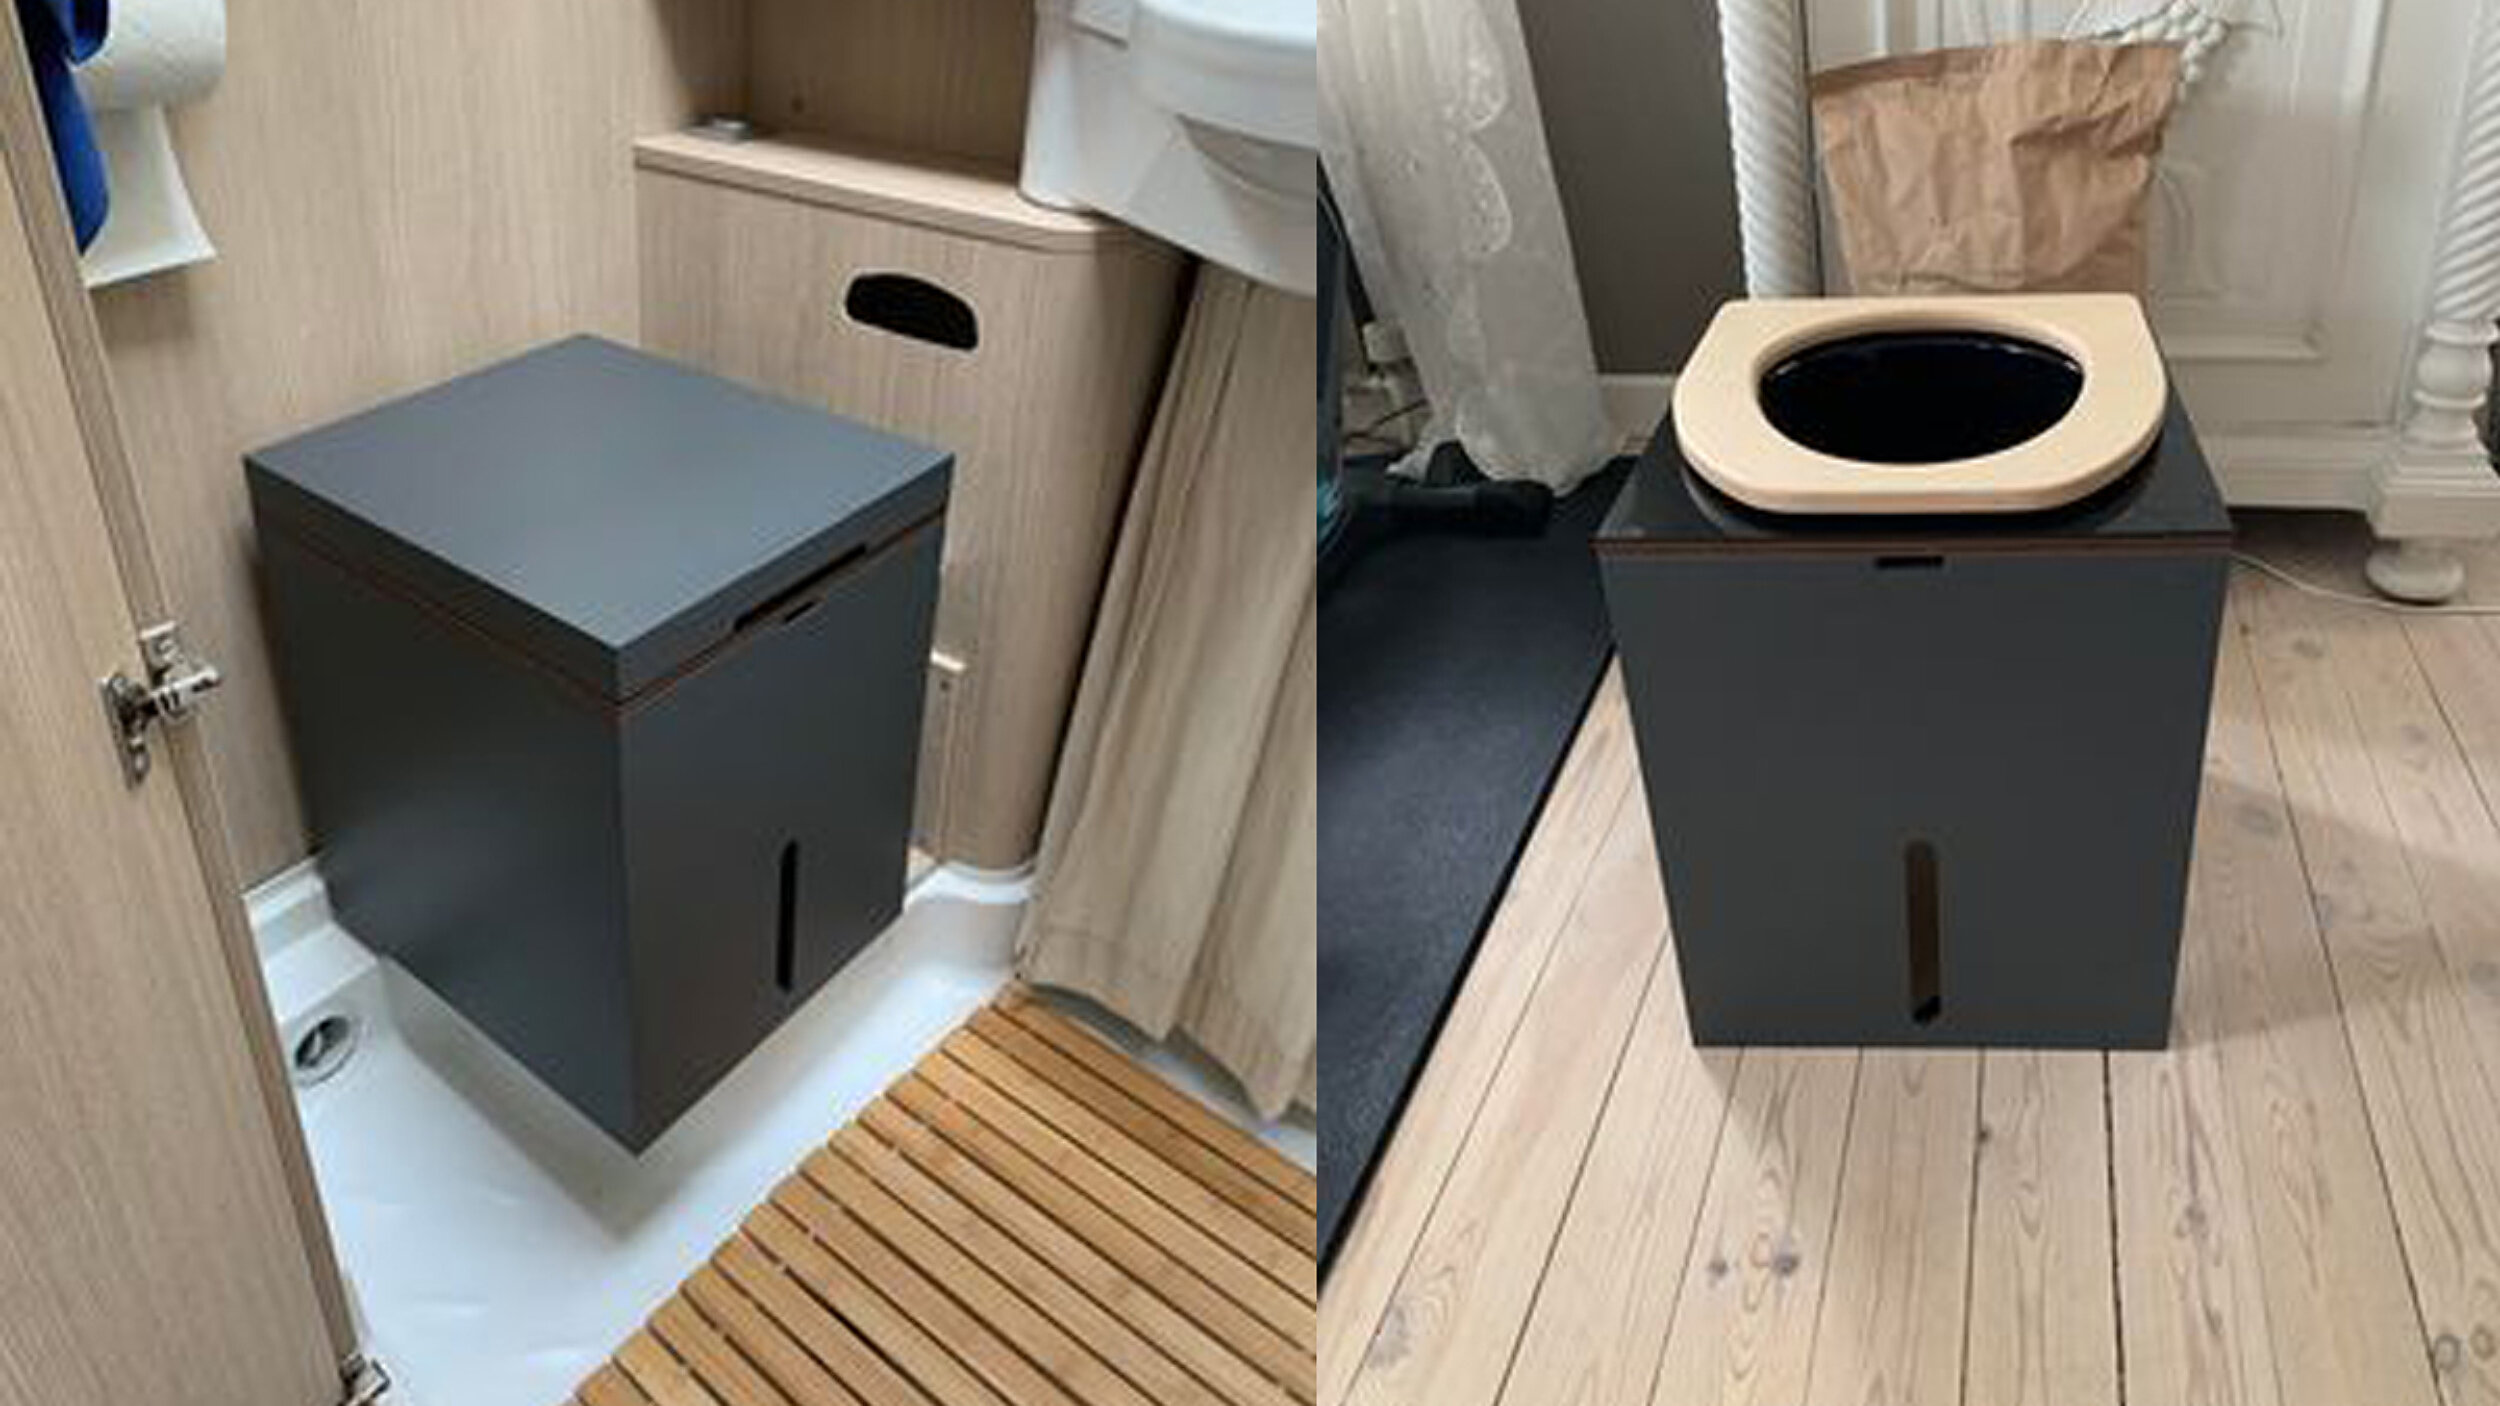 MiniLoo composting toilet in a camper van